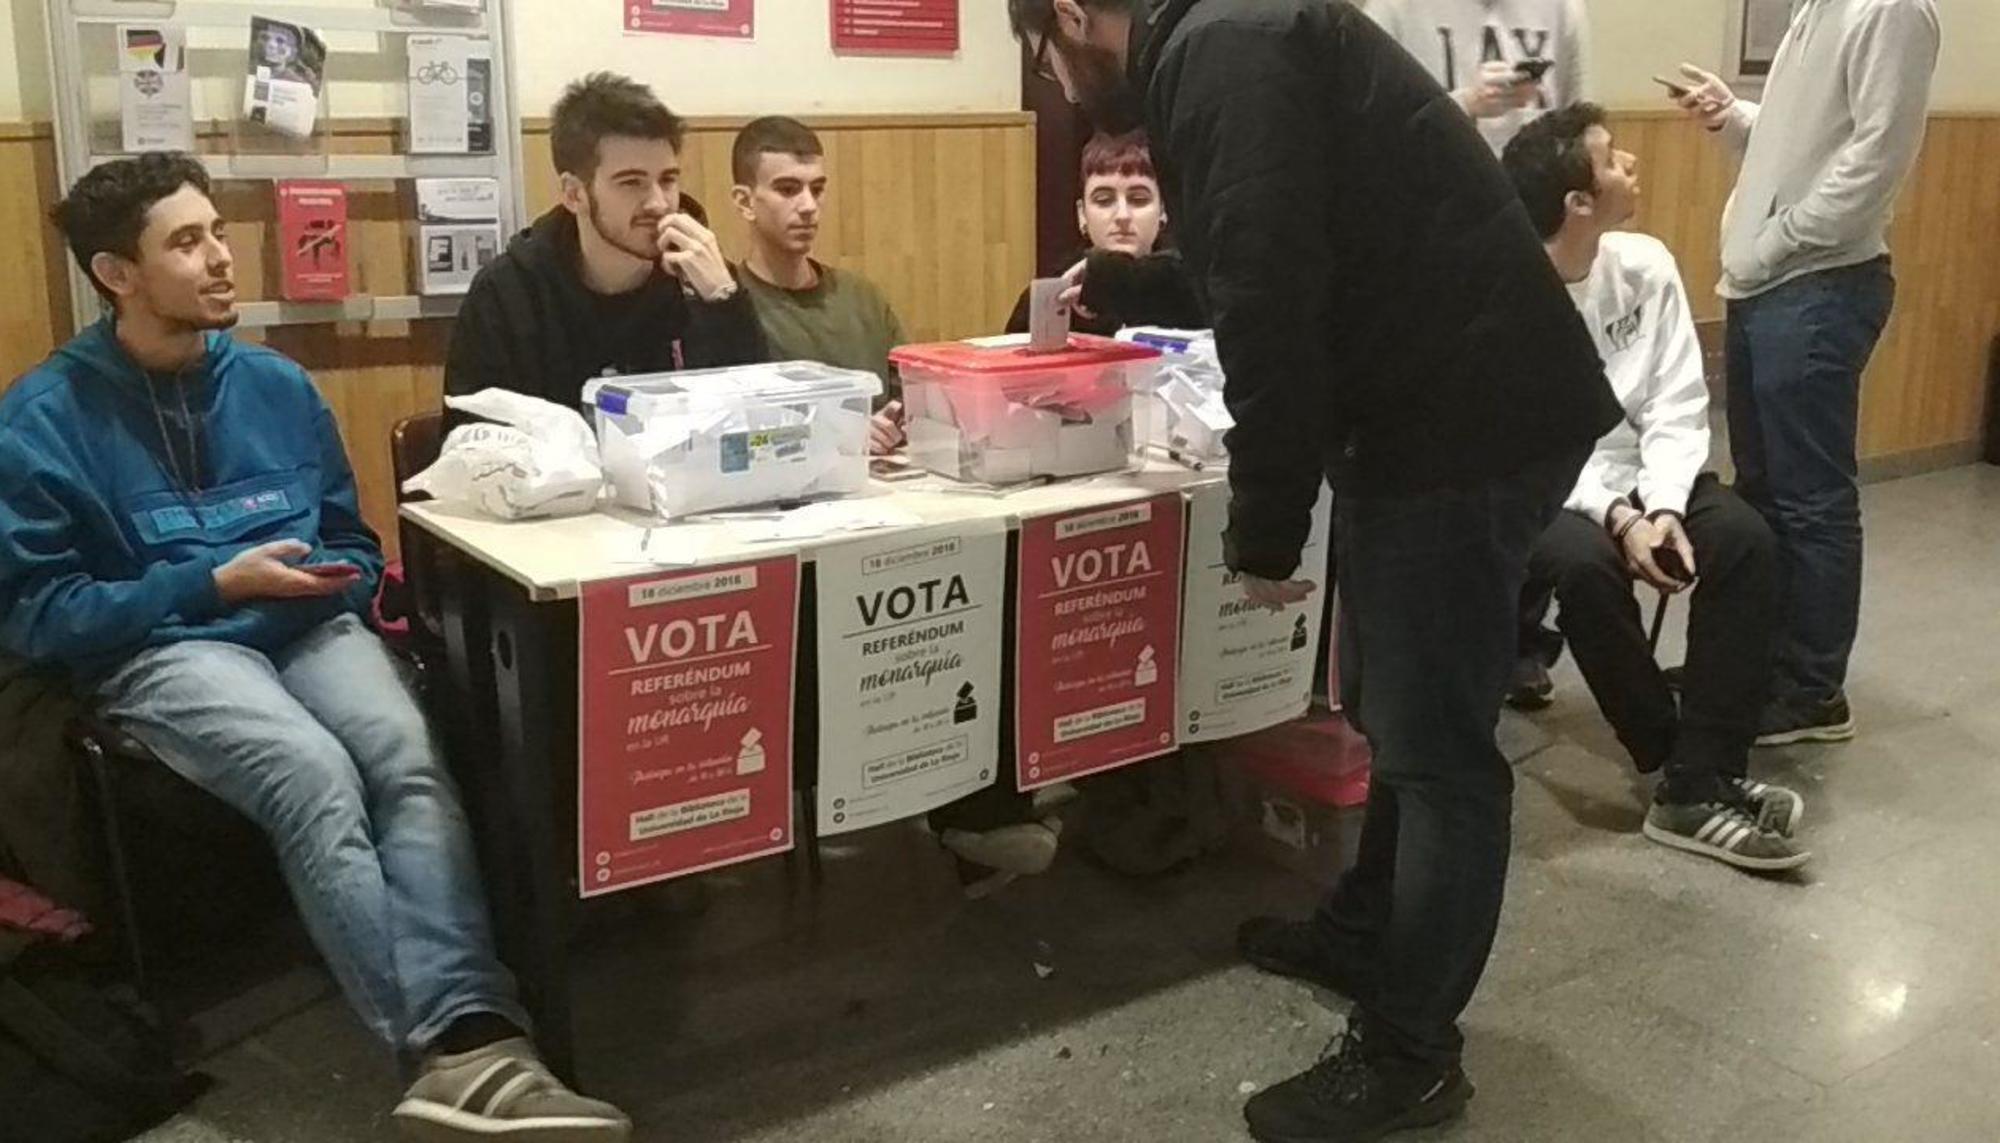 Votación sobre la Monarquía en la Universidad de La Rioja